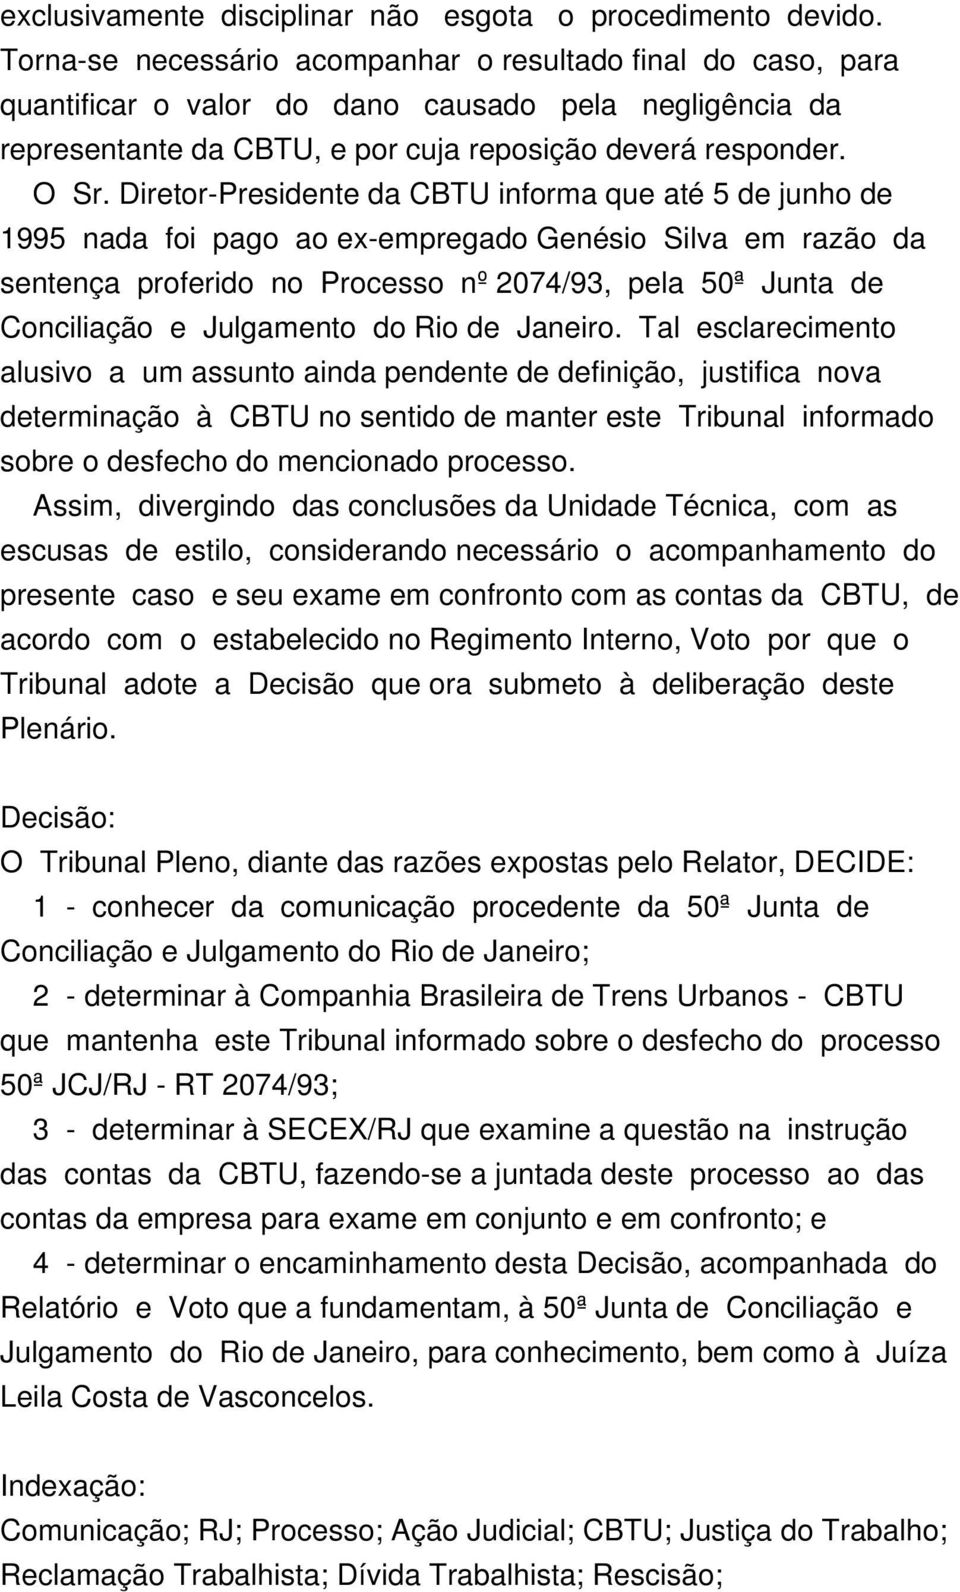 Diretor-Presidente da CBTU informa que até 5 de junho de 1995 nada foi pago ao ex-empregado Genésio Silva em razão da sentença proferido no Processo nº 2074/93, pela 50ª Junta de Conciliação e